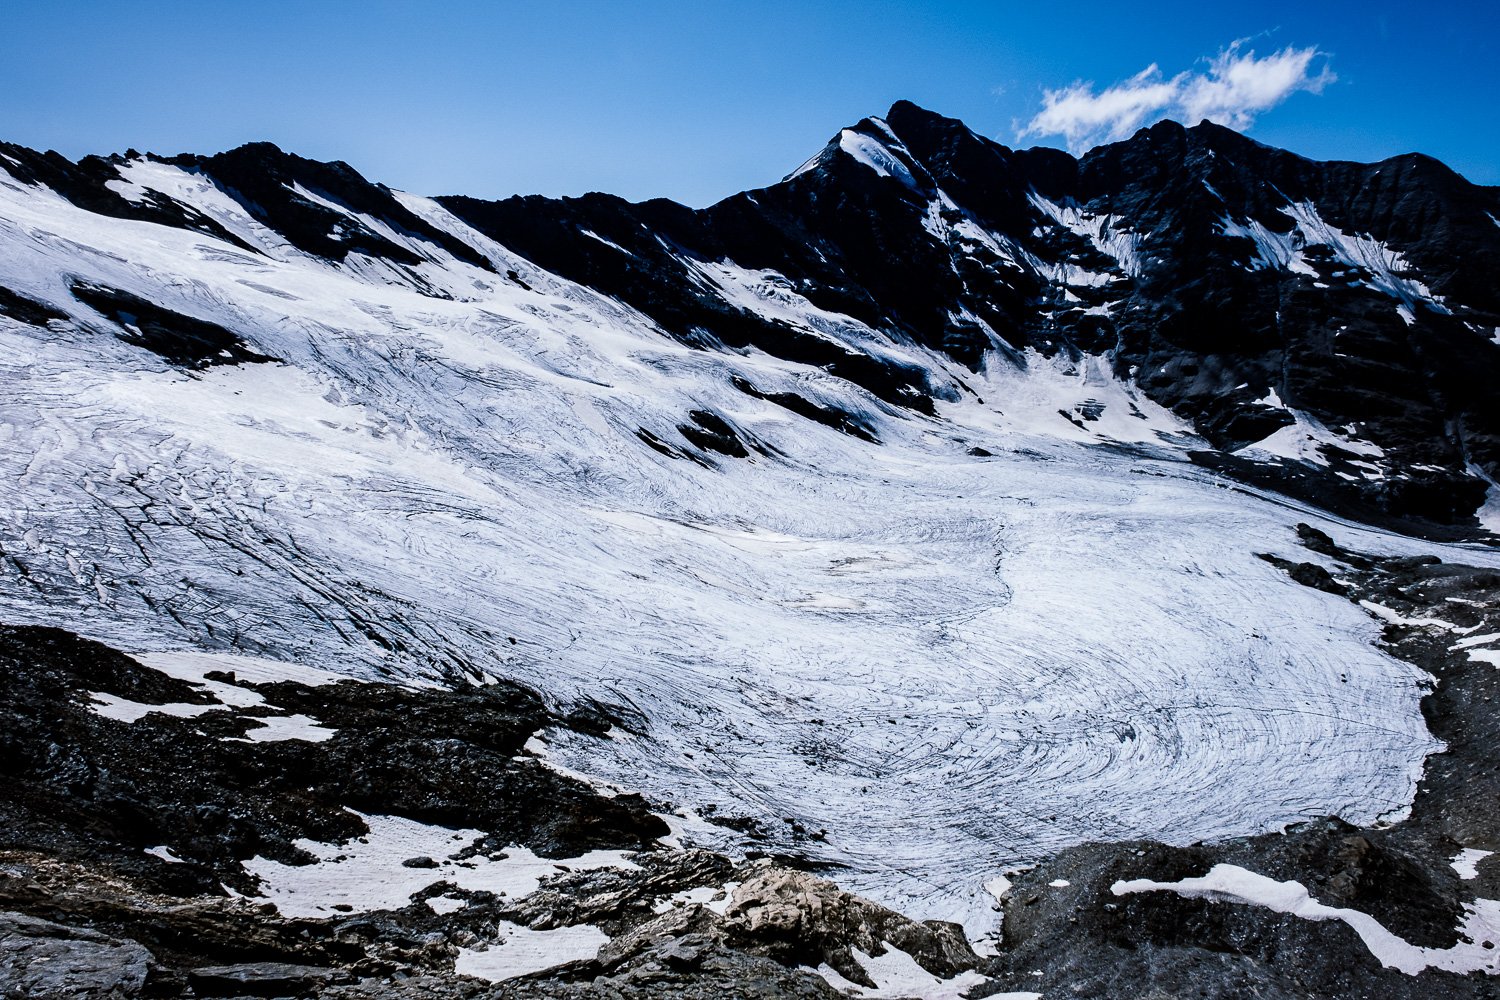  Glacier de Gliairetta, Gran Paradiso National Park, Italy 